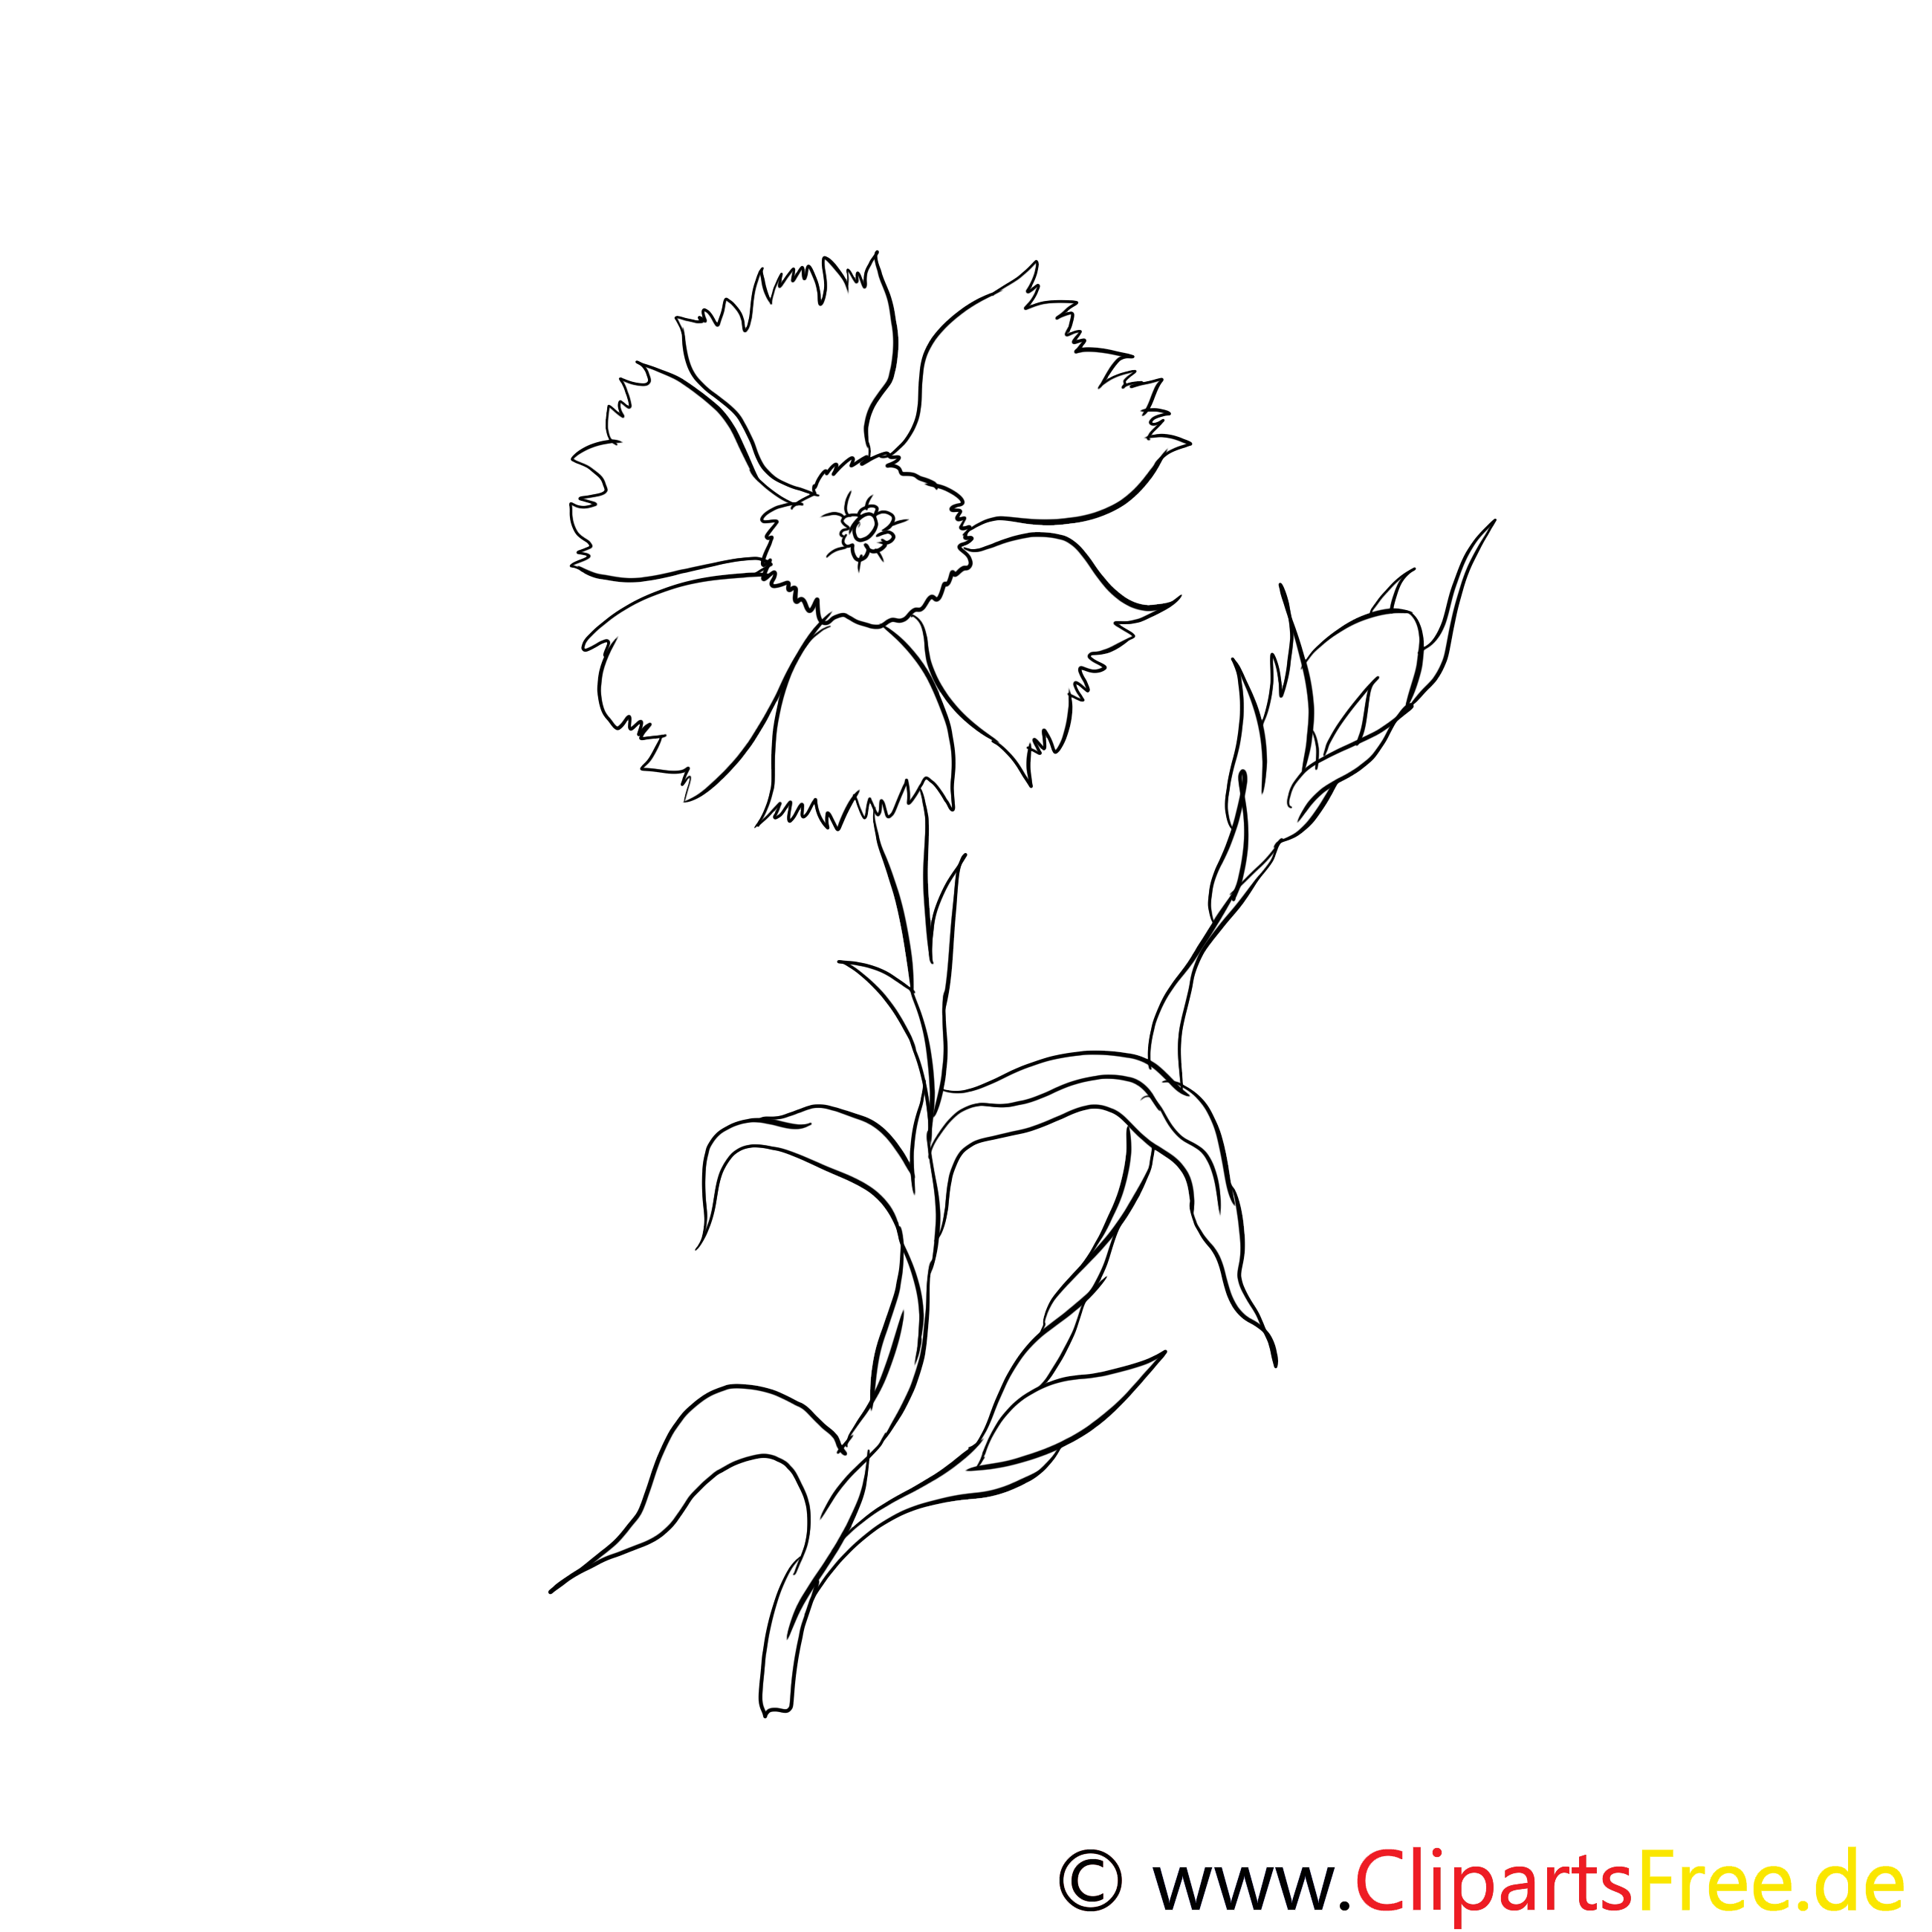 Clip art gratuit fleurs à colorier